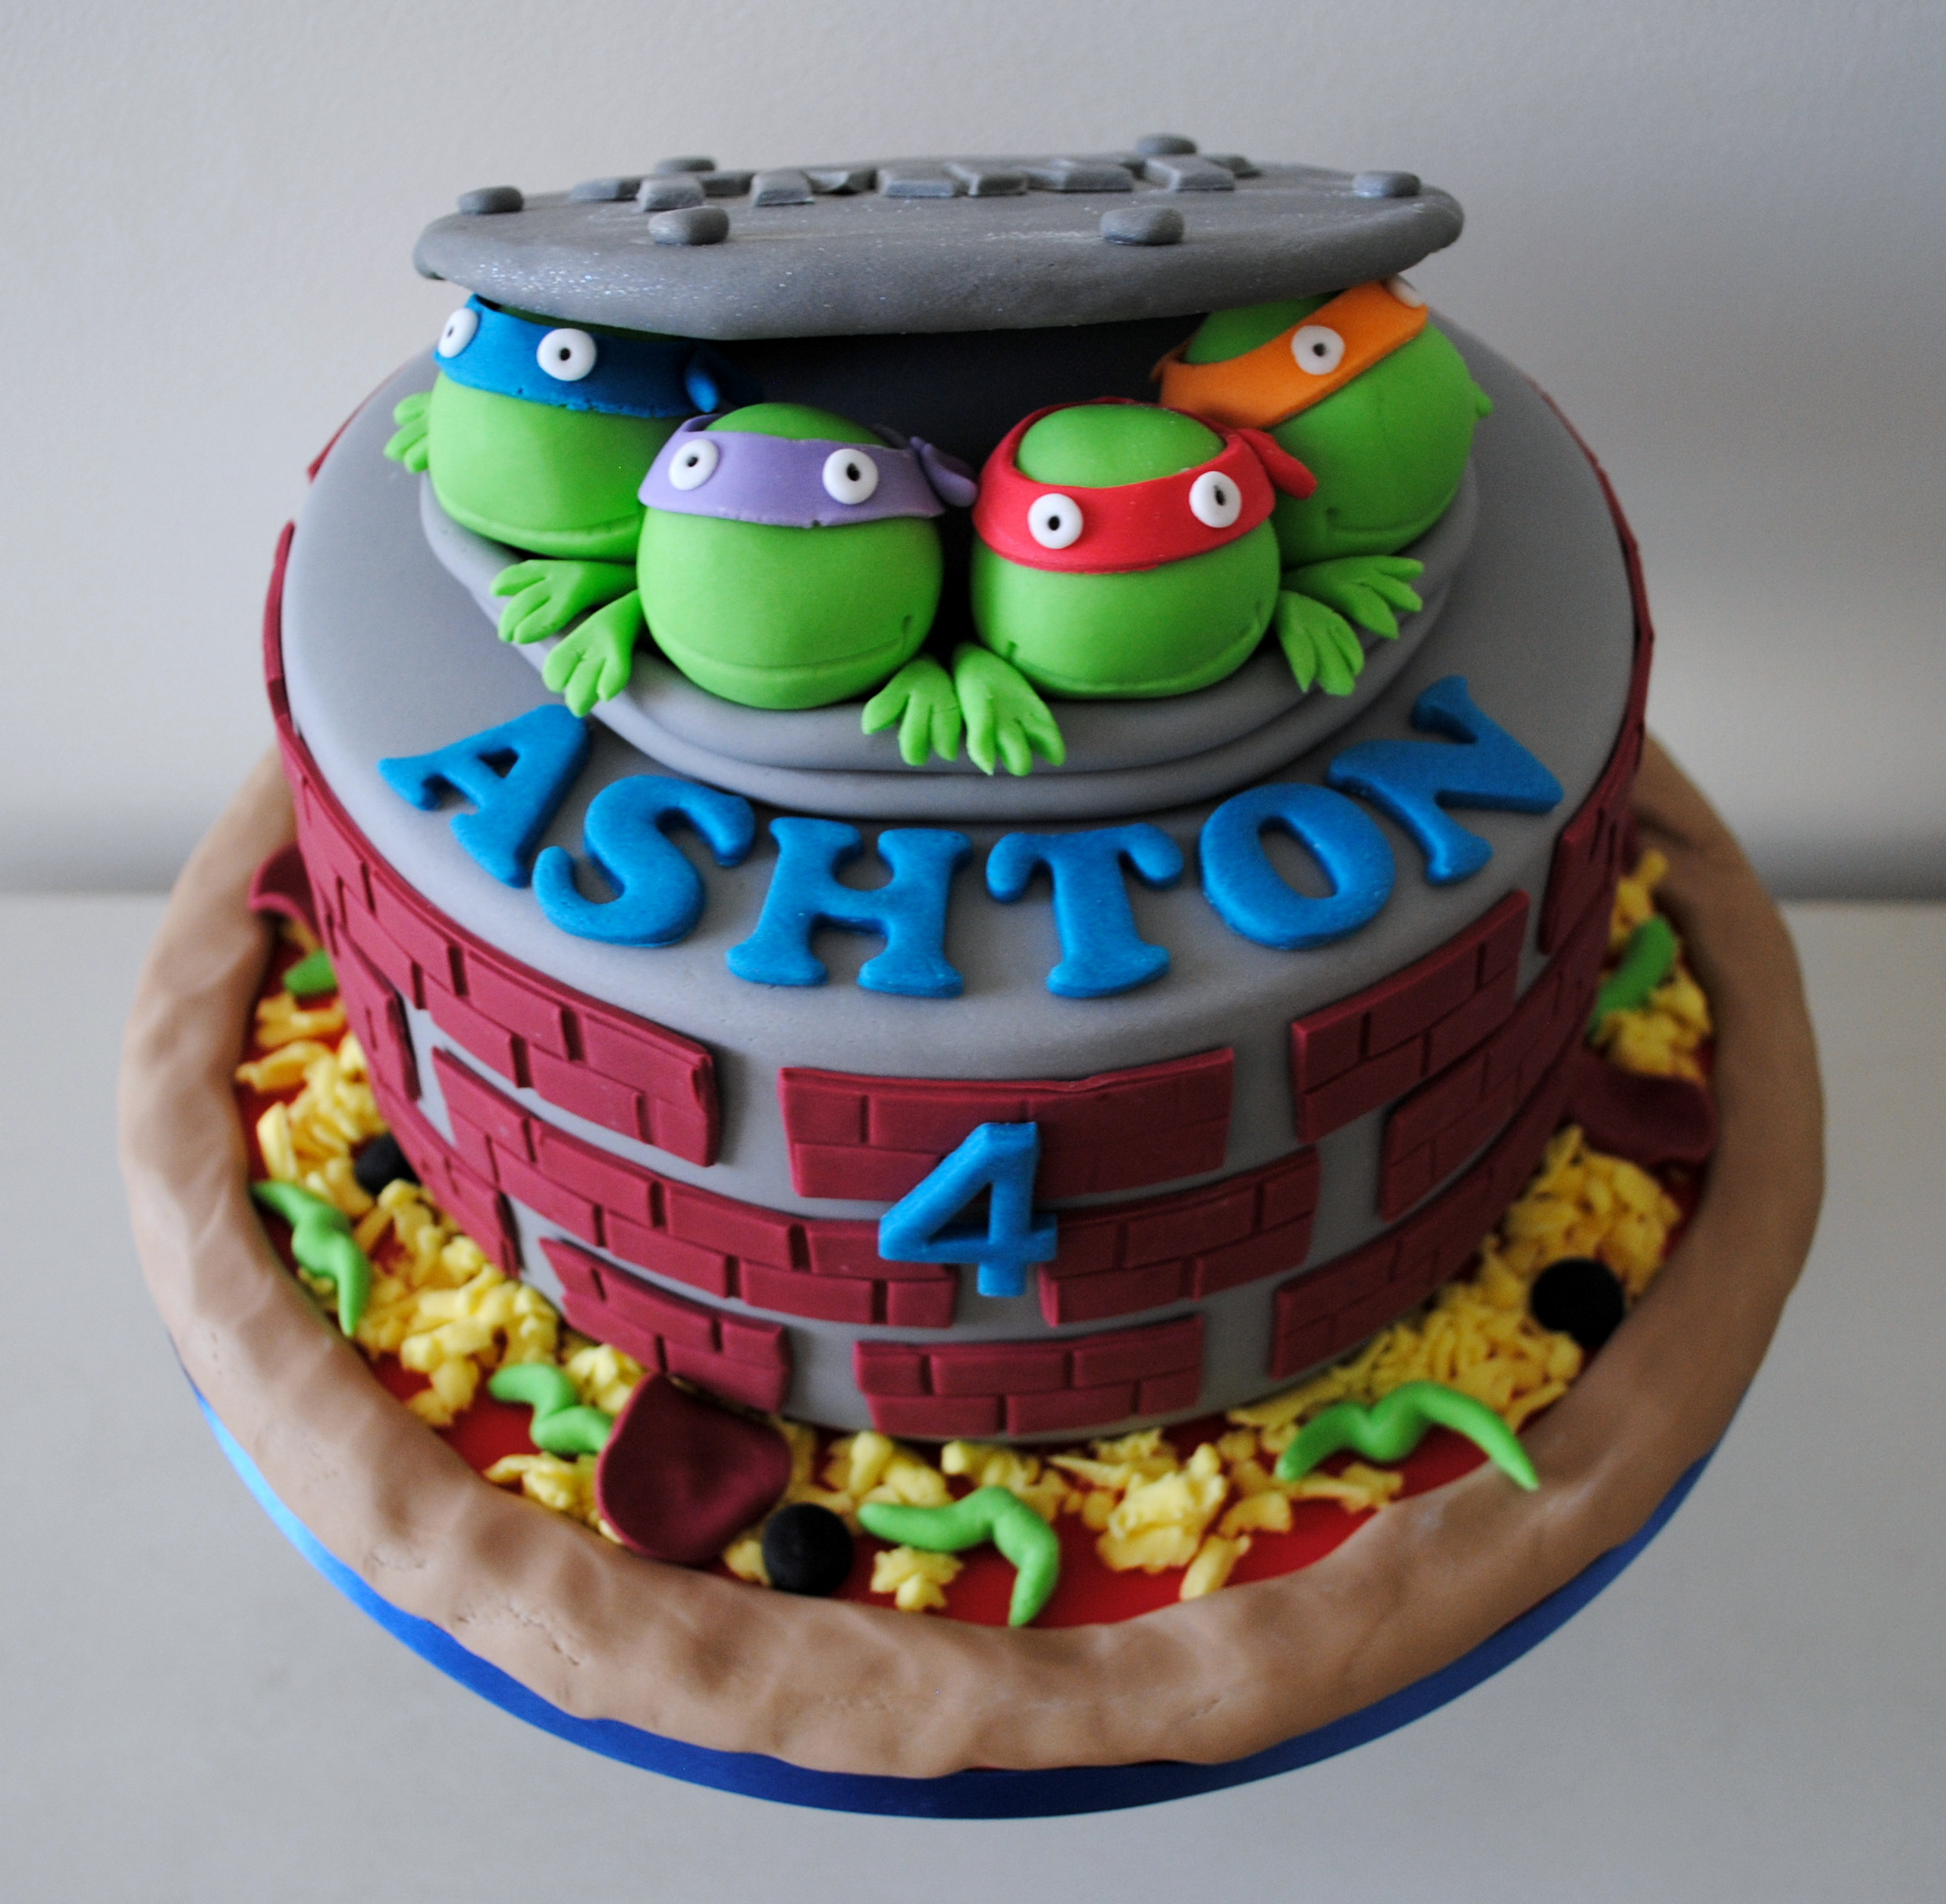 Ninja Turtles Birthday Cakes
 Miss Cupcakes Blog Archive Teenage mutant ninja turtle